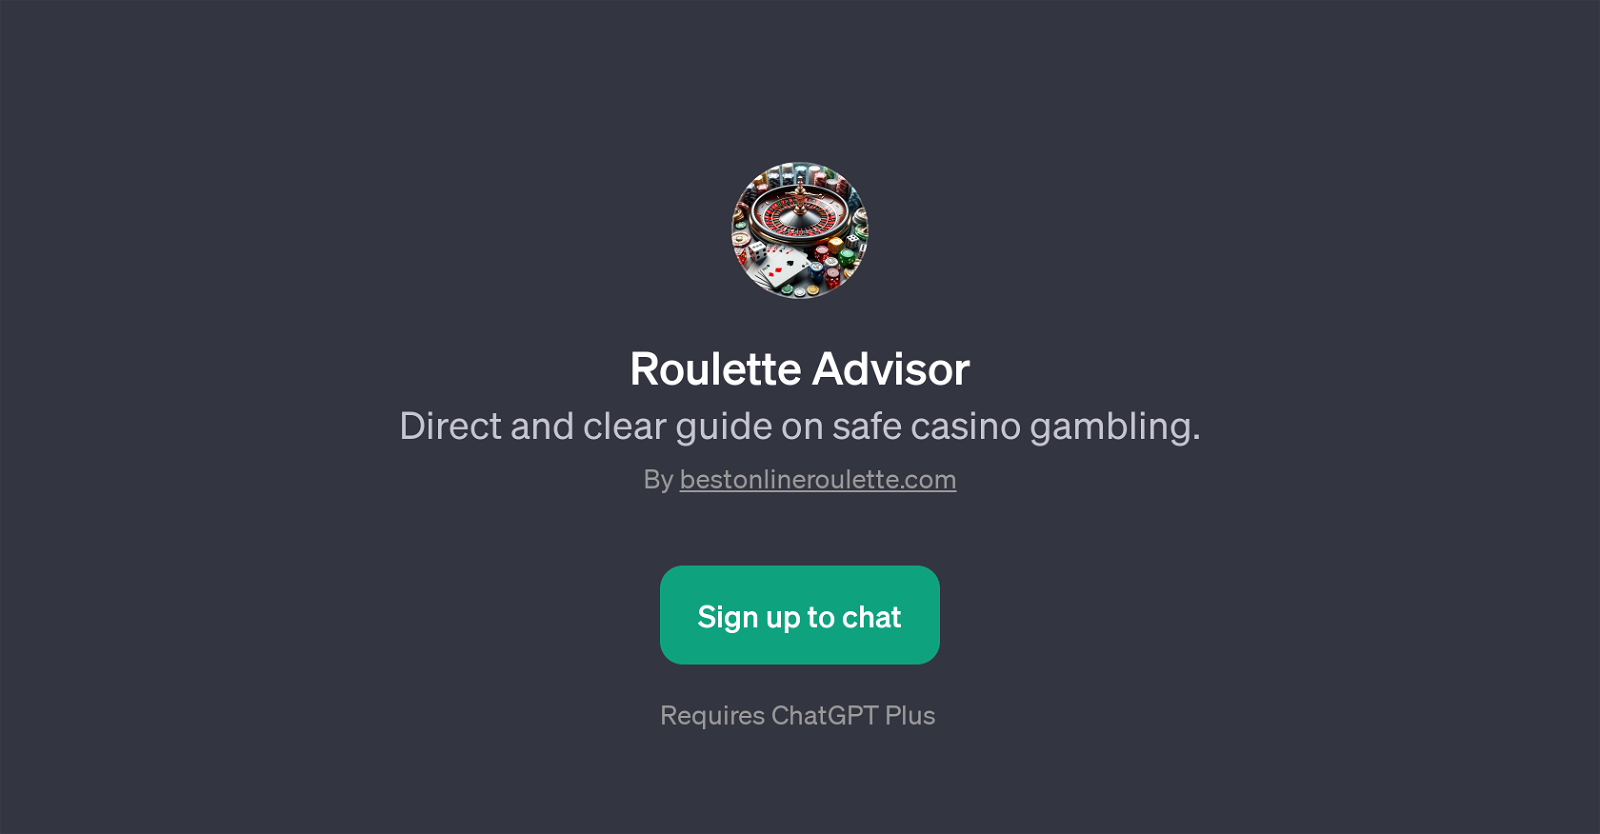 Roulette Advisor website